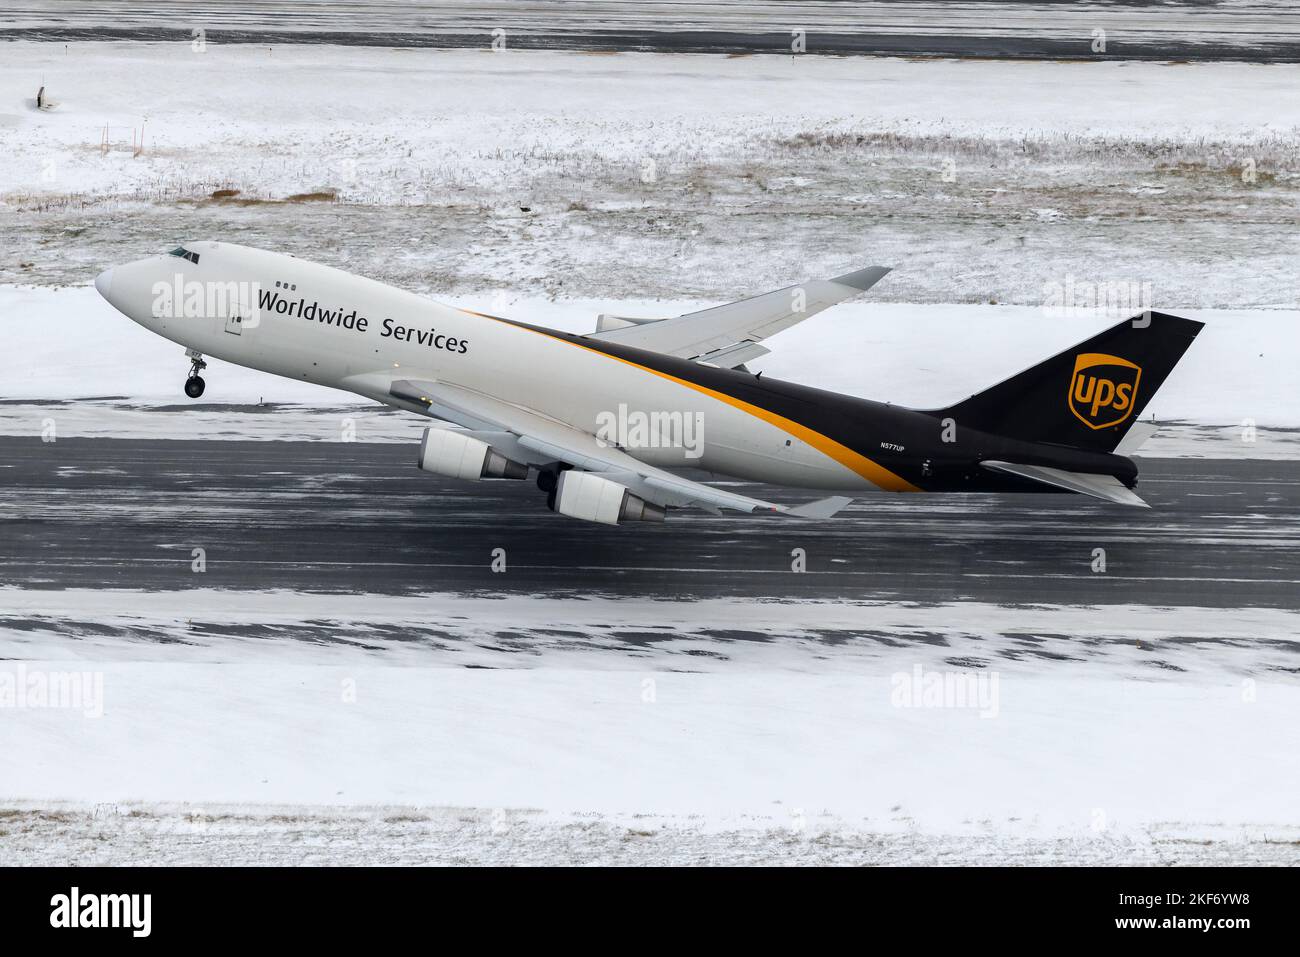 UPS Cargo Boeing 747-400F-Flugzeuge starten nach einem schweren Schneefall vom Flughafen Anchorage aus. Flugzeug von UPS Cargo 747 Frachter Abfahrt mit Schnee. Stockfoto